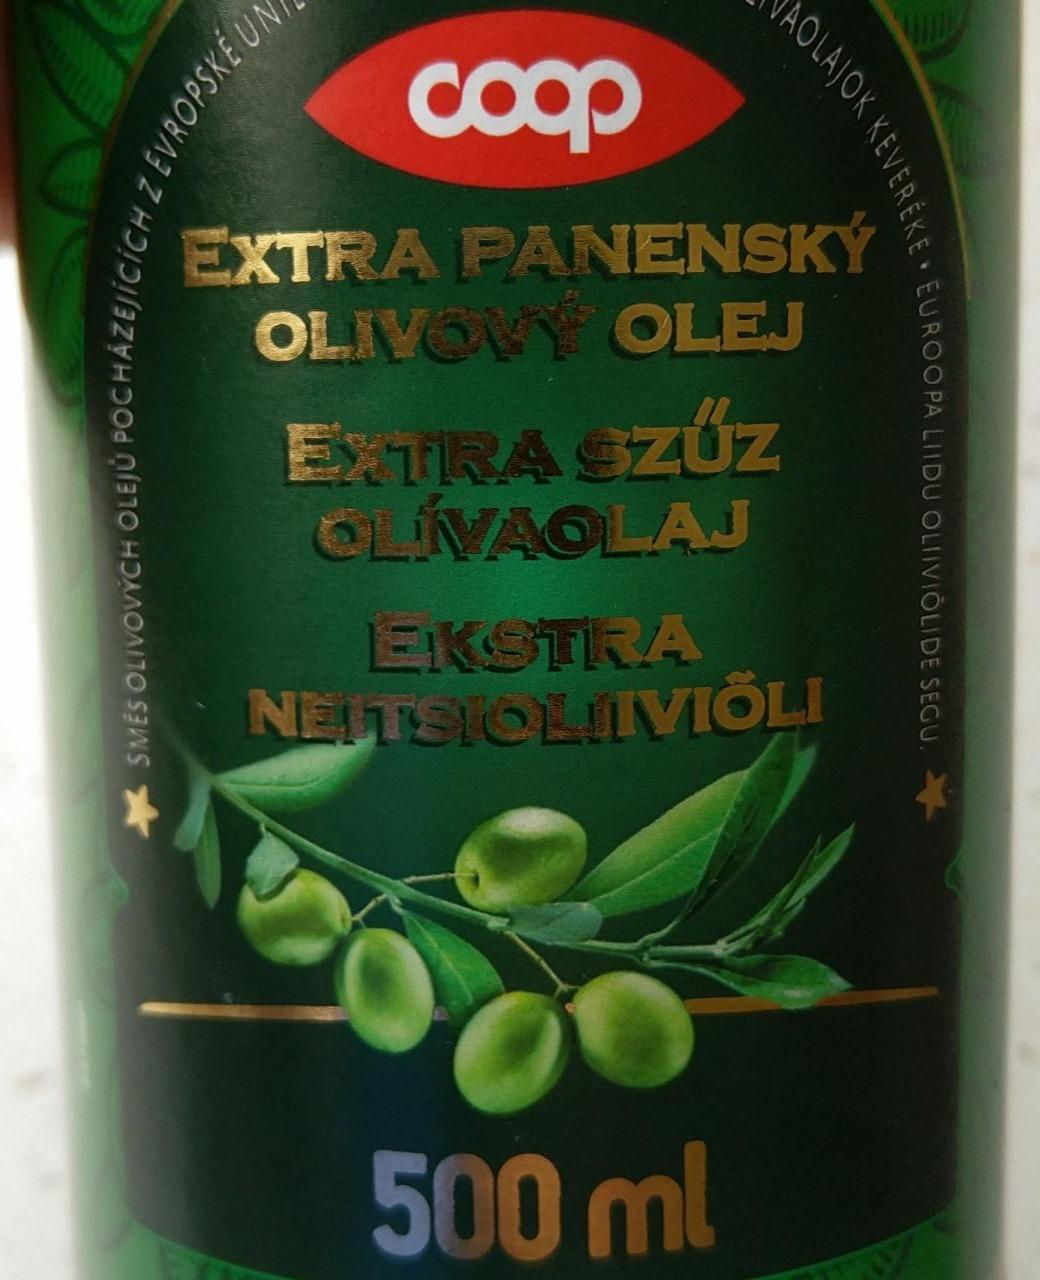 Fotografie - Extra panenský olivový olej Coop